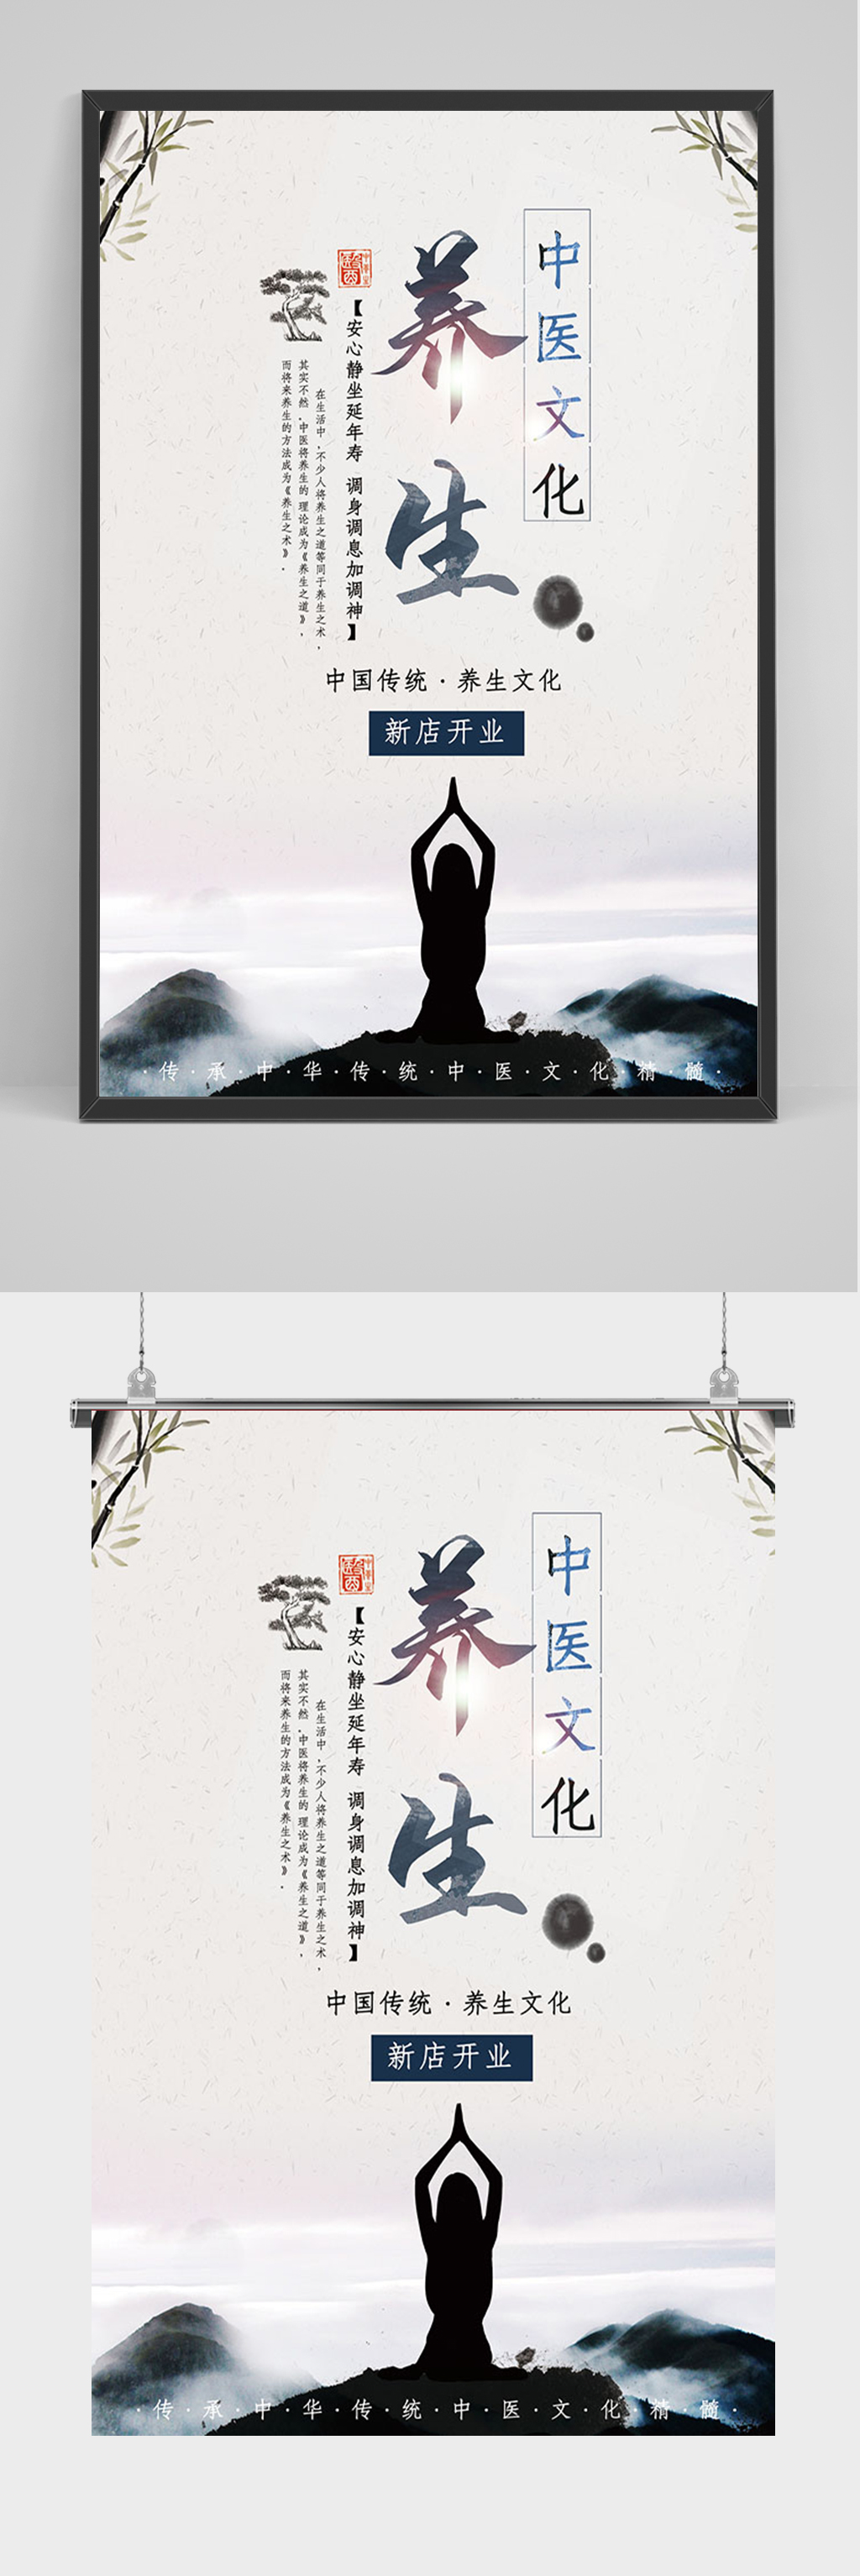 中医理疗宣传广告内容图片